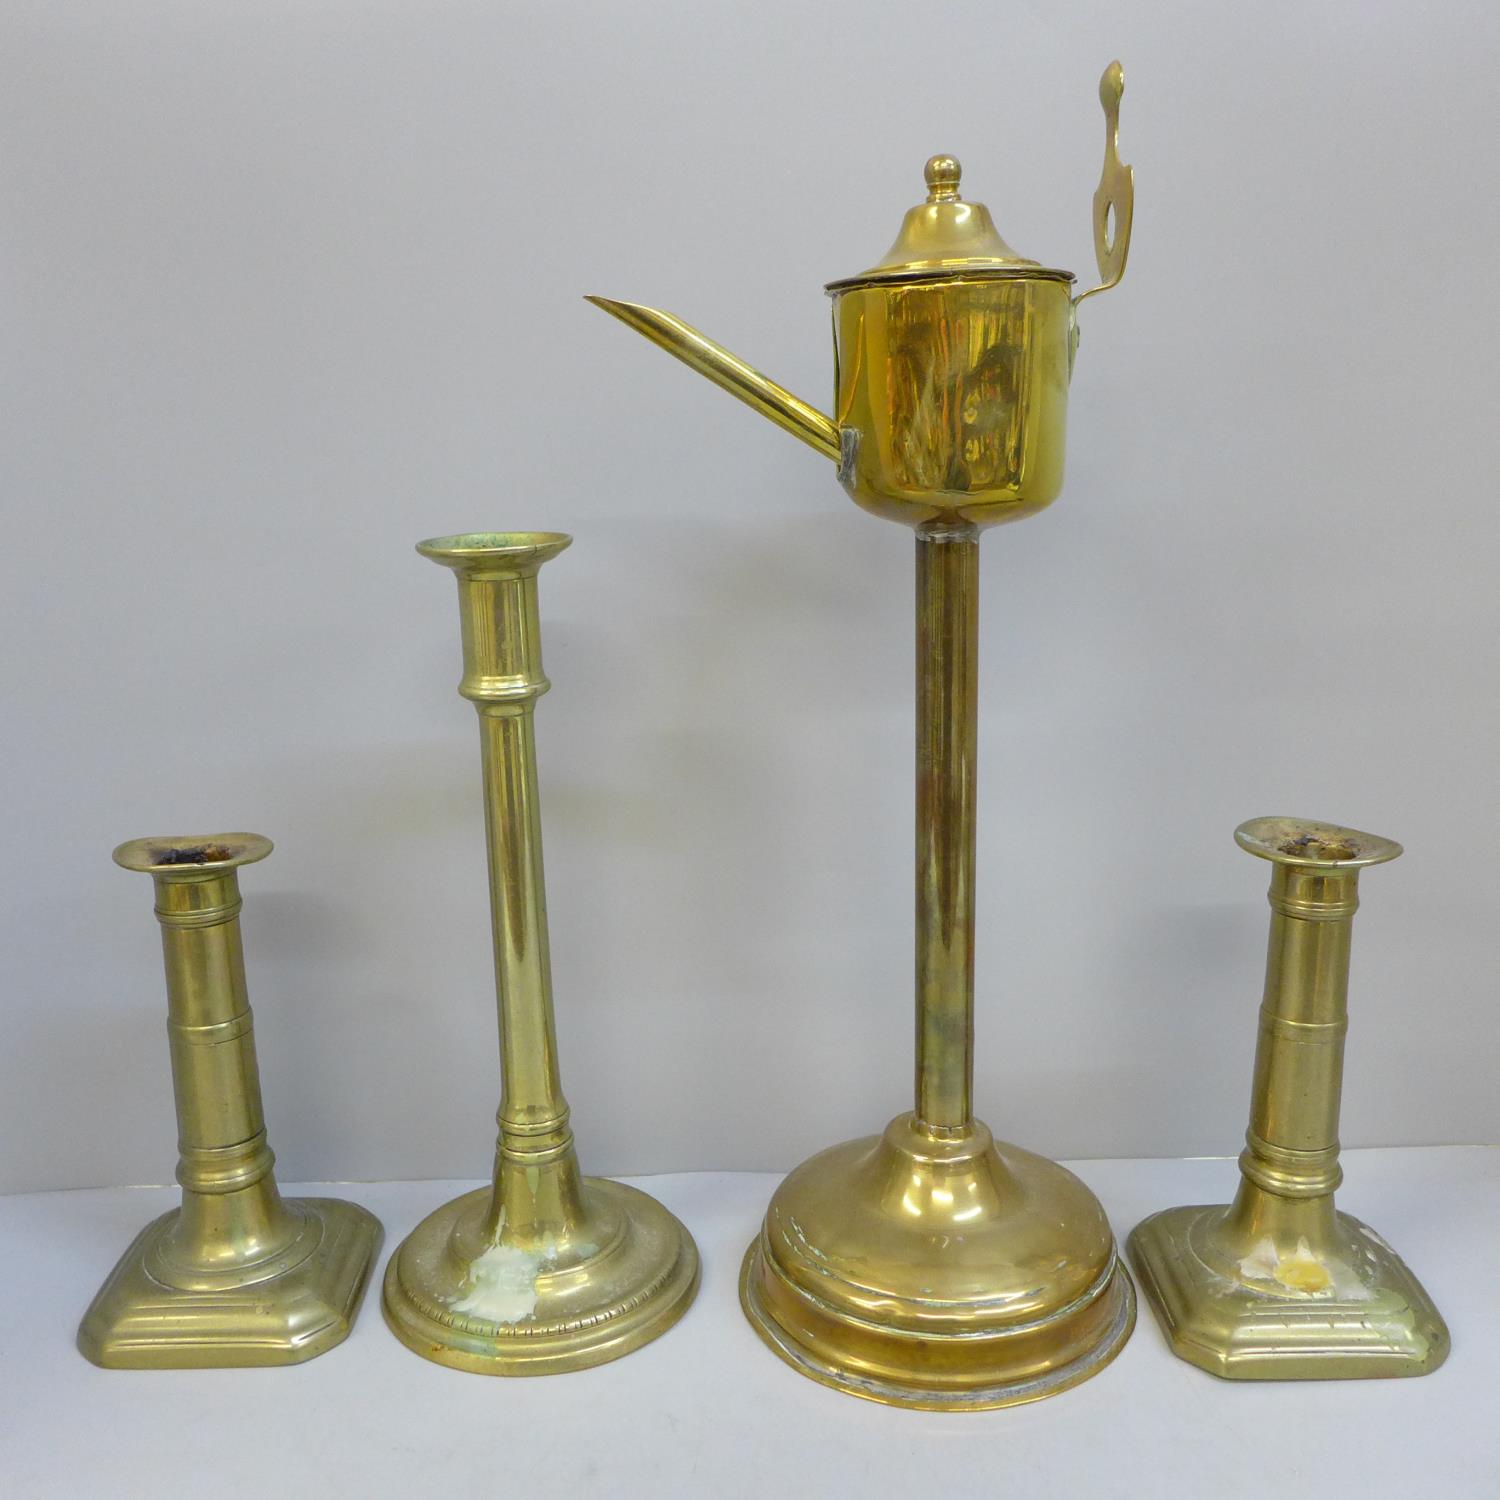 A Georgian brass whale oil lamp, a pair of gun barrel candlesticks and a tall single candlestick